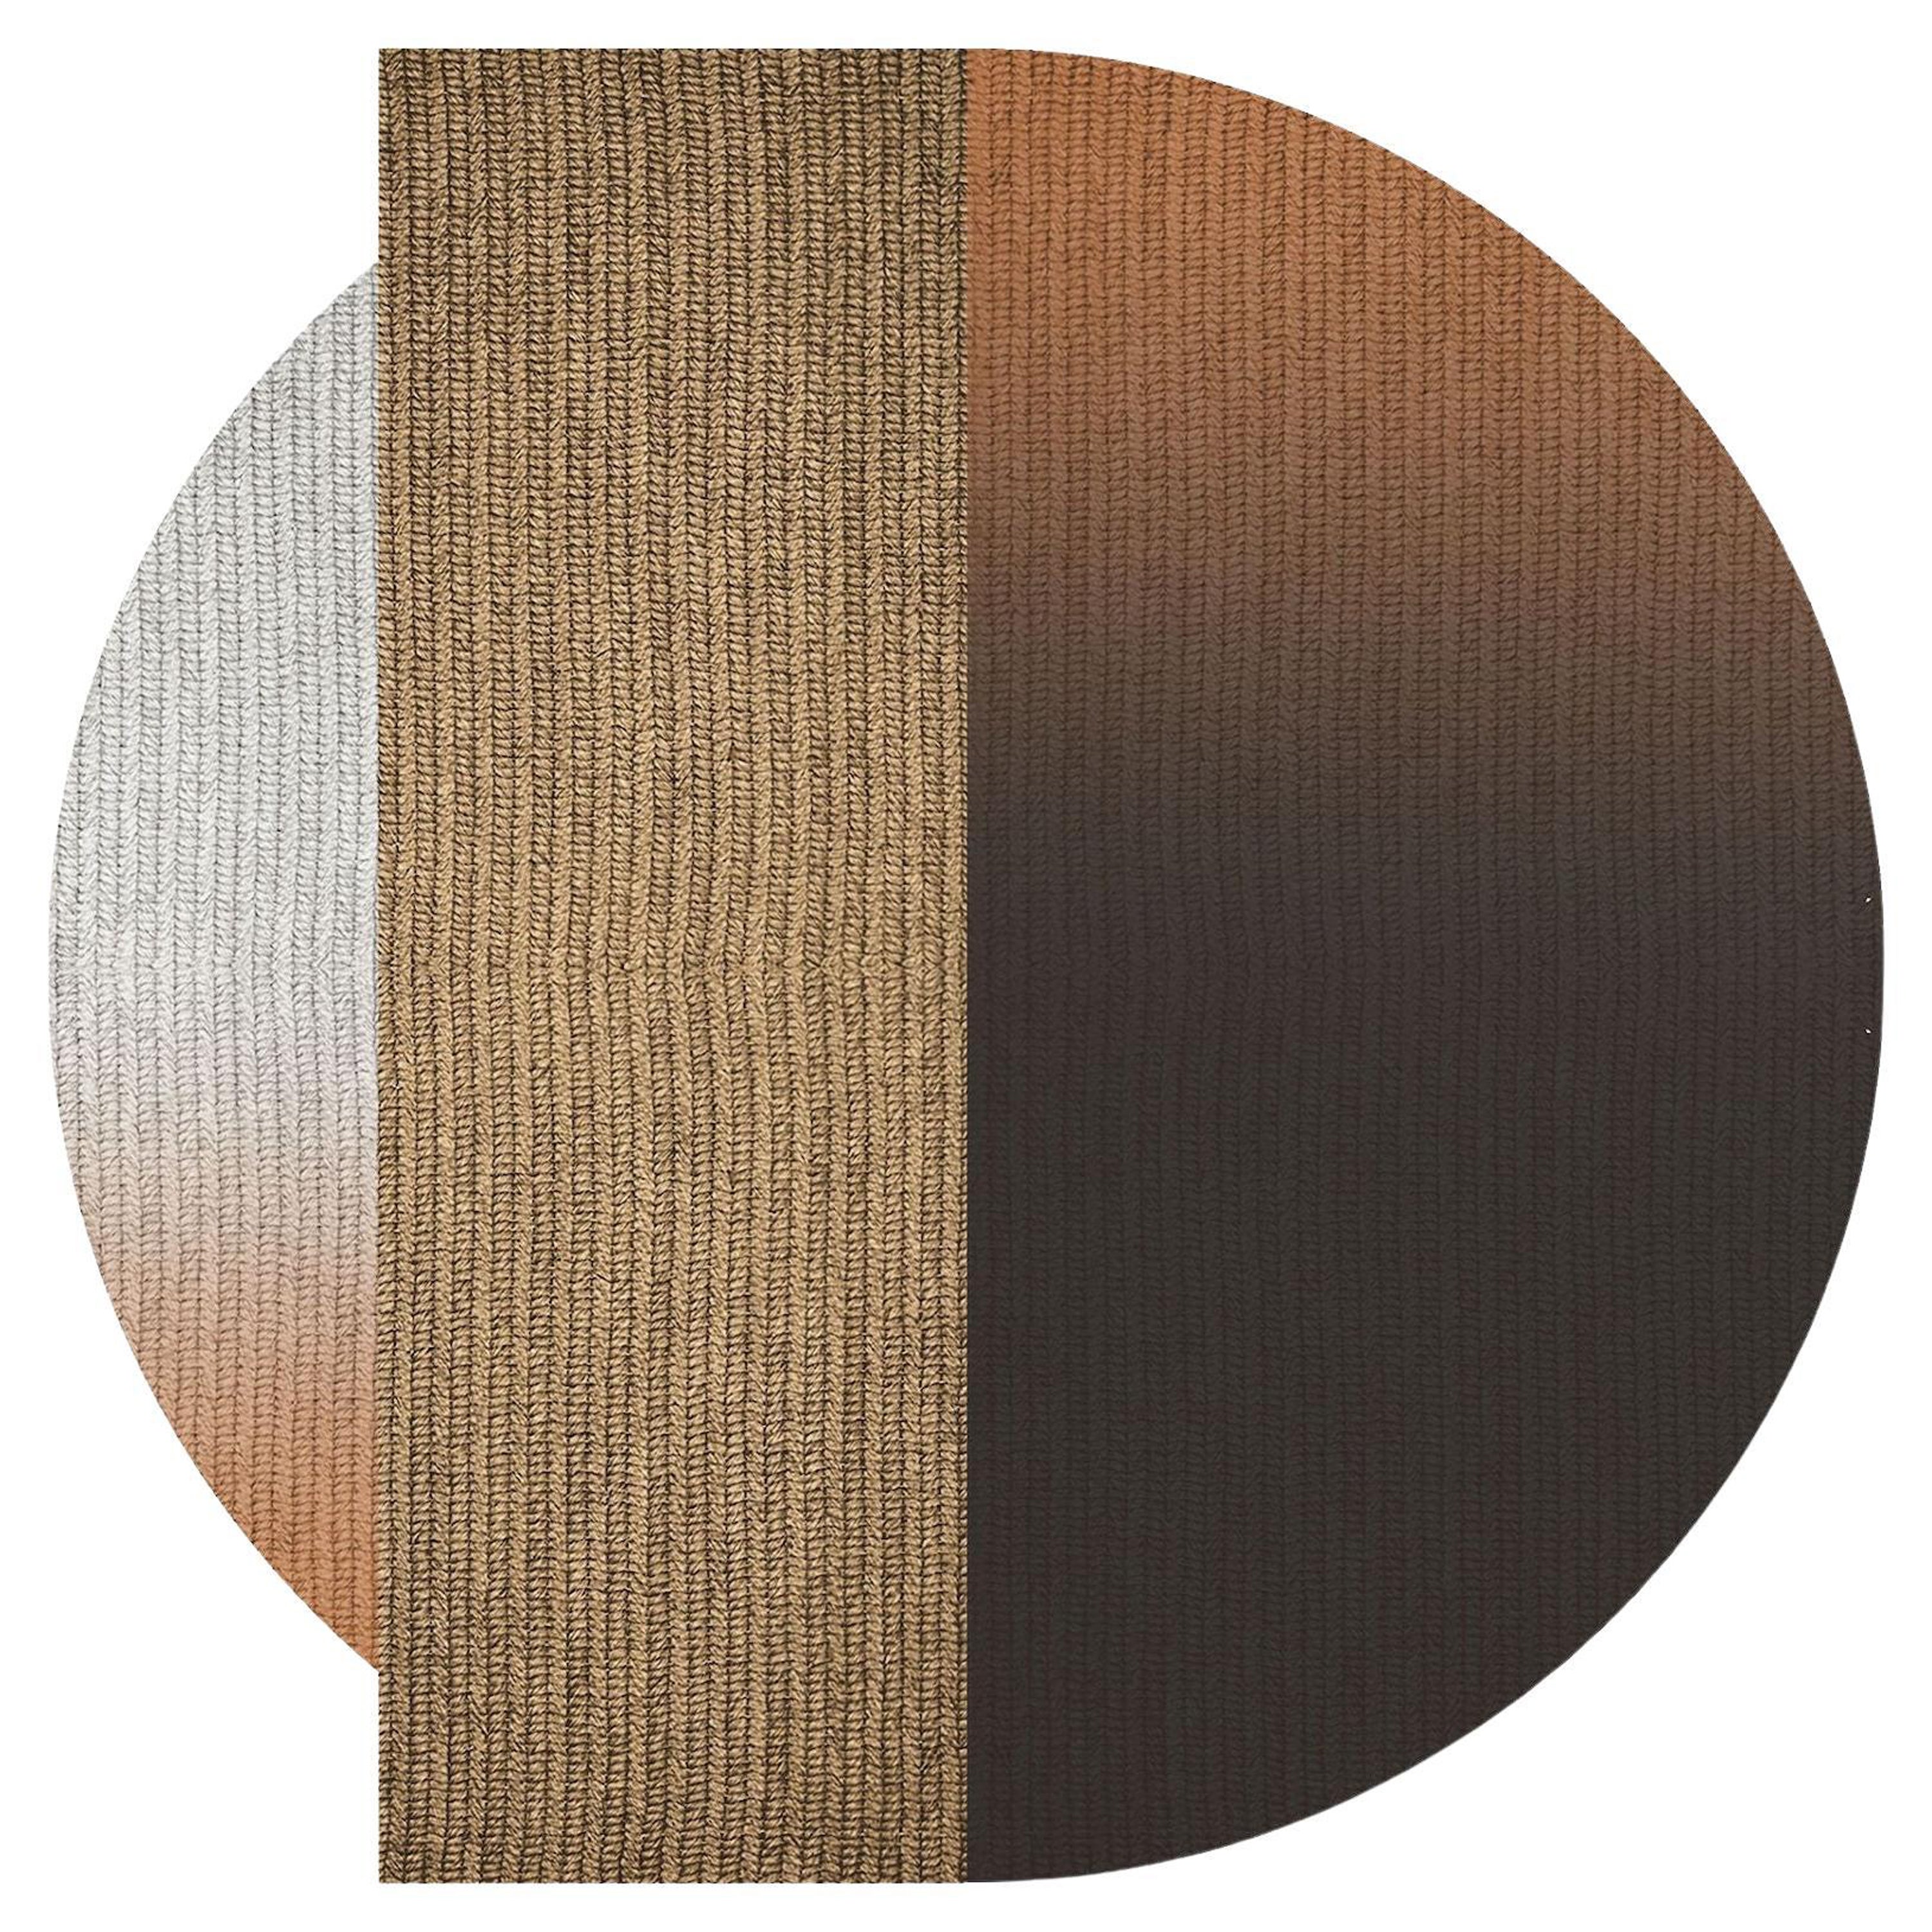 Teppich 'Flux' aus Abaca, Farbe 'Mahagoni', Ø 250cm von Claire Vos für Musett Design